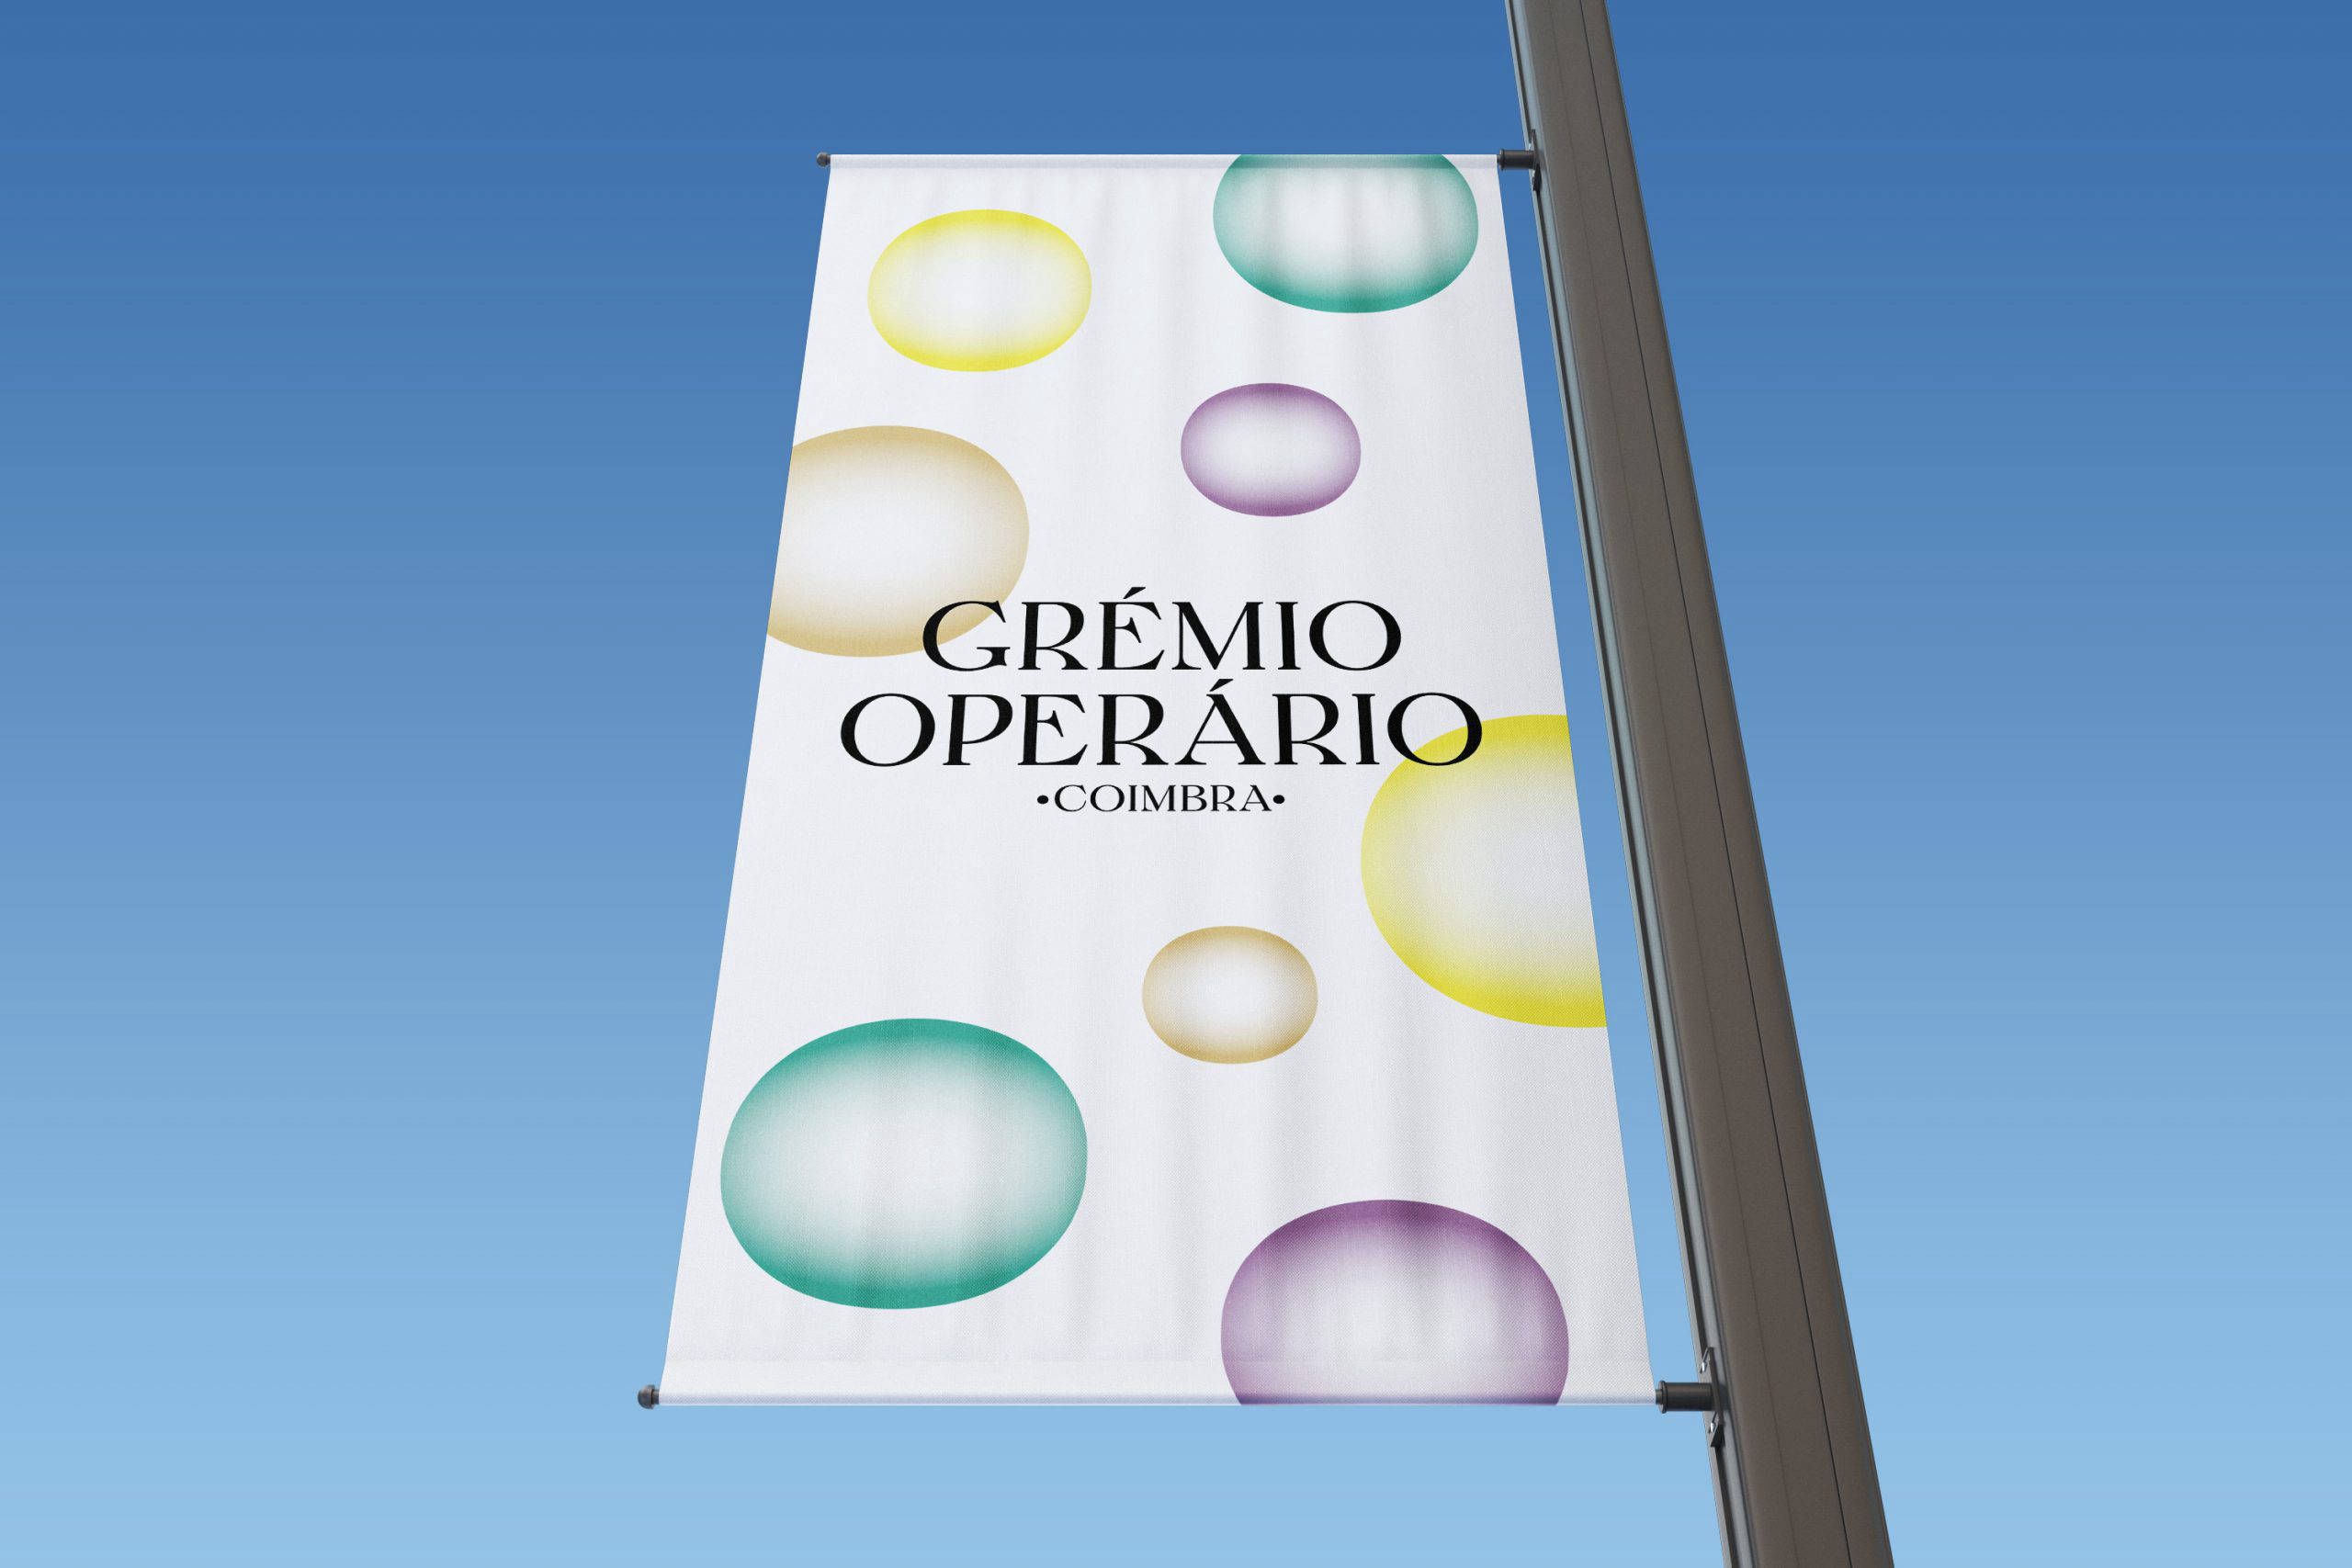 Grémio Operário de Coimbra Image 4